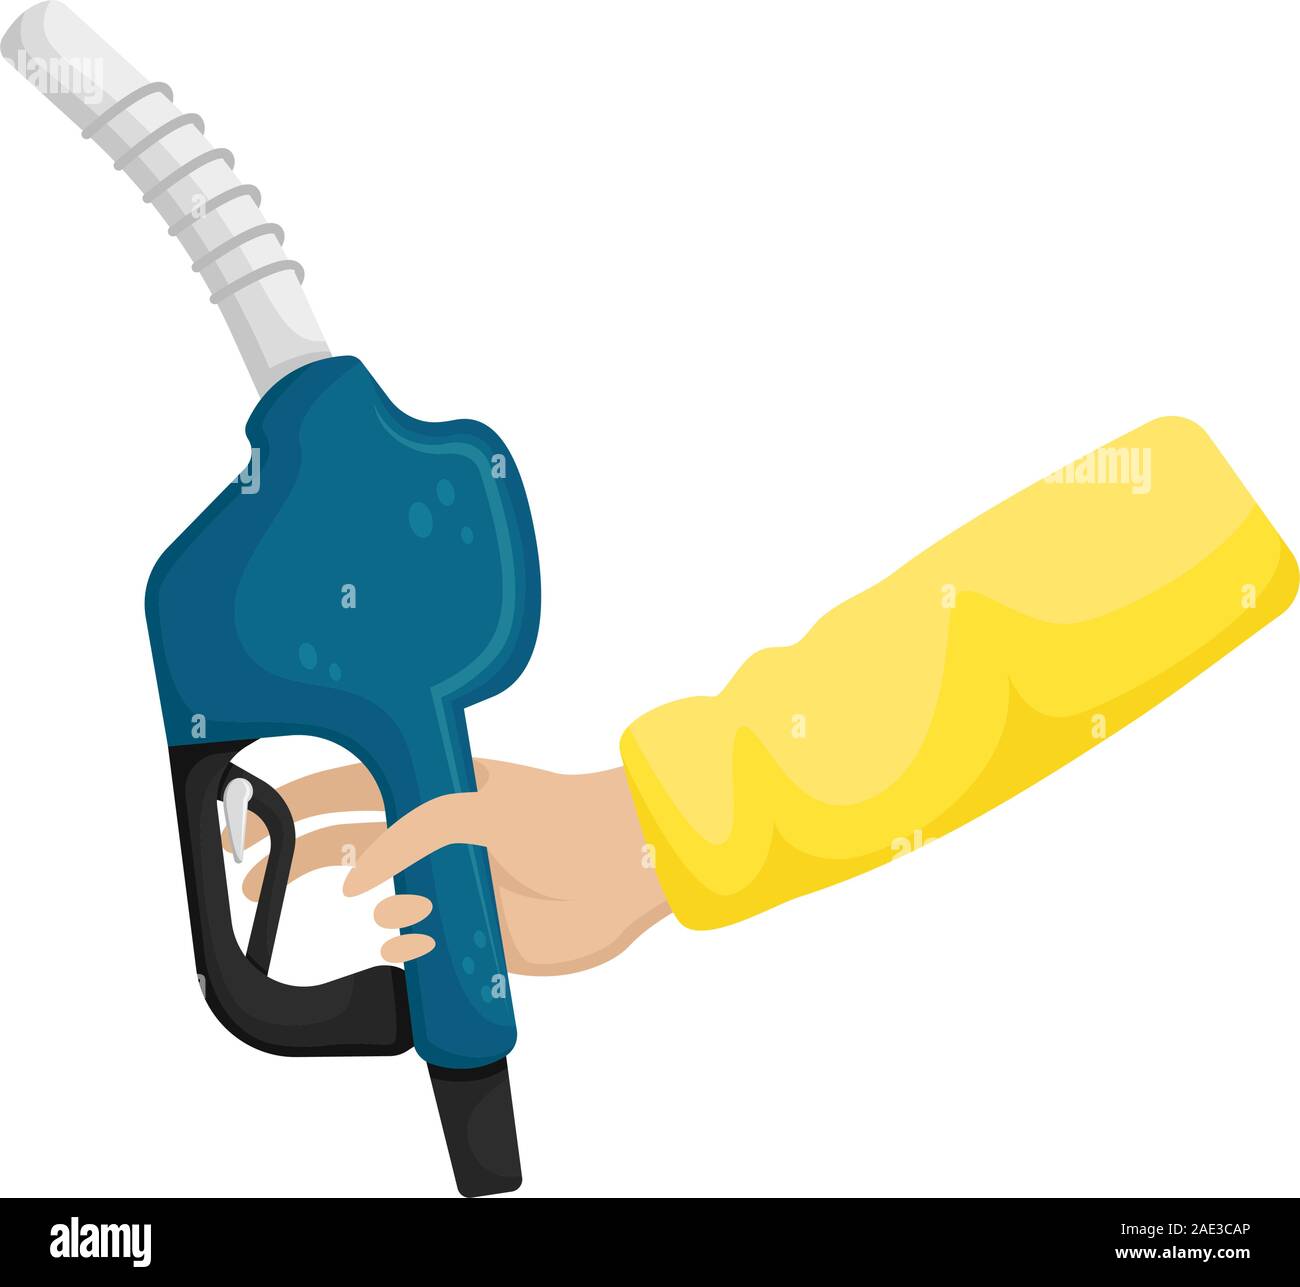 Benzin Und Benzinpumpe Mit Kanister Und Geldkonzept Vektor Stock Vektor Art  und mehr Bilder von Energieindustrie - iStock